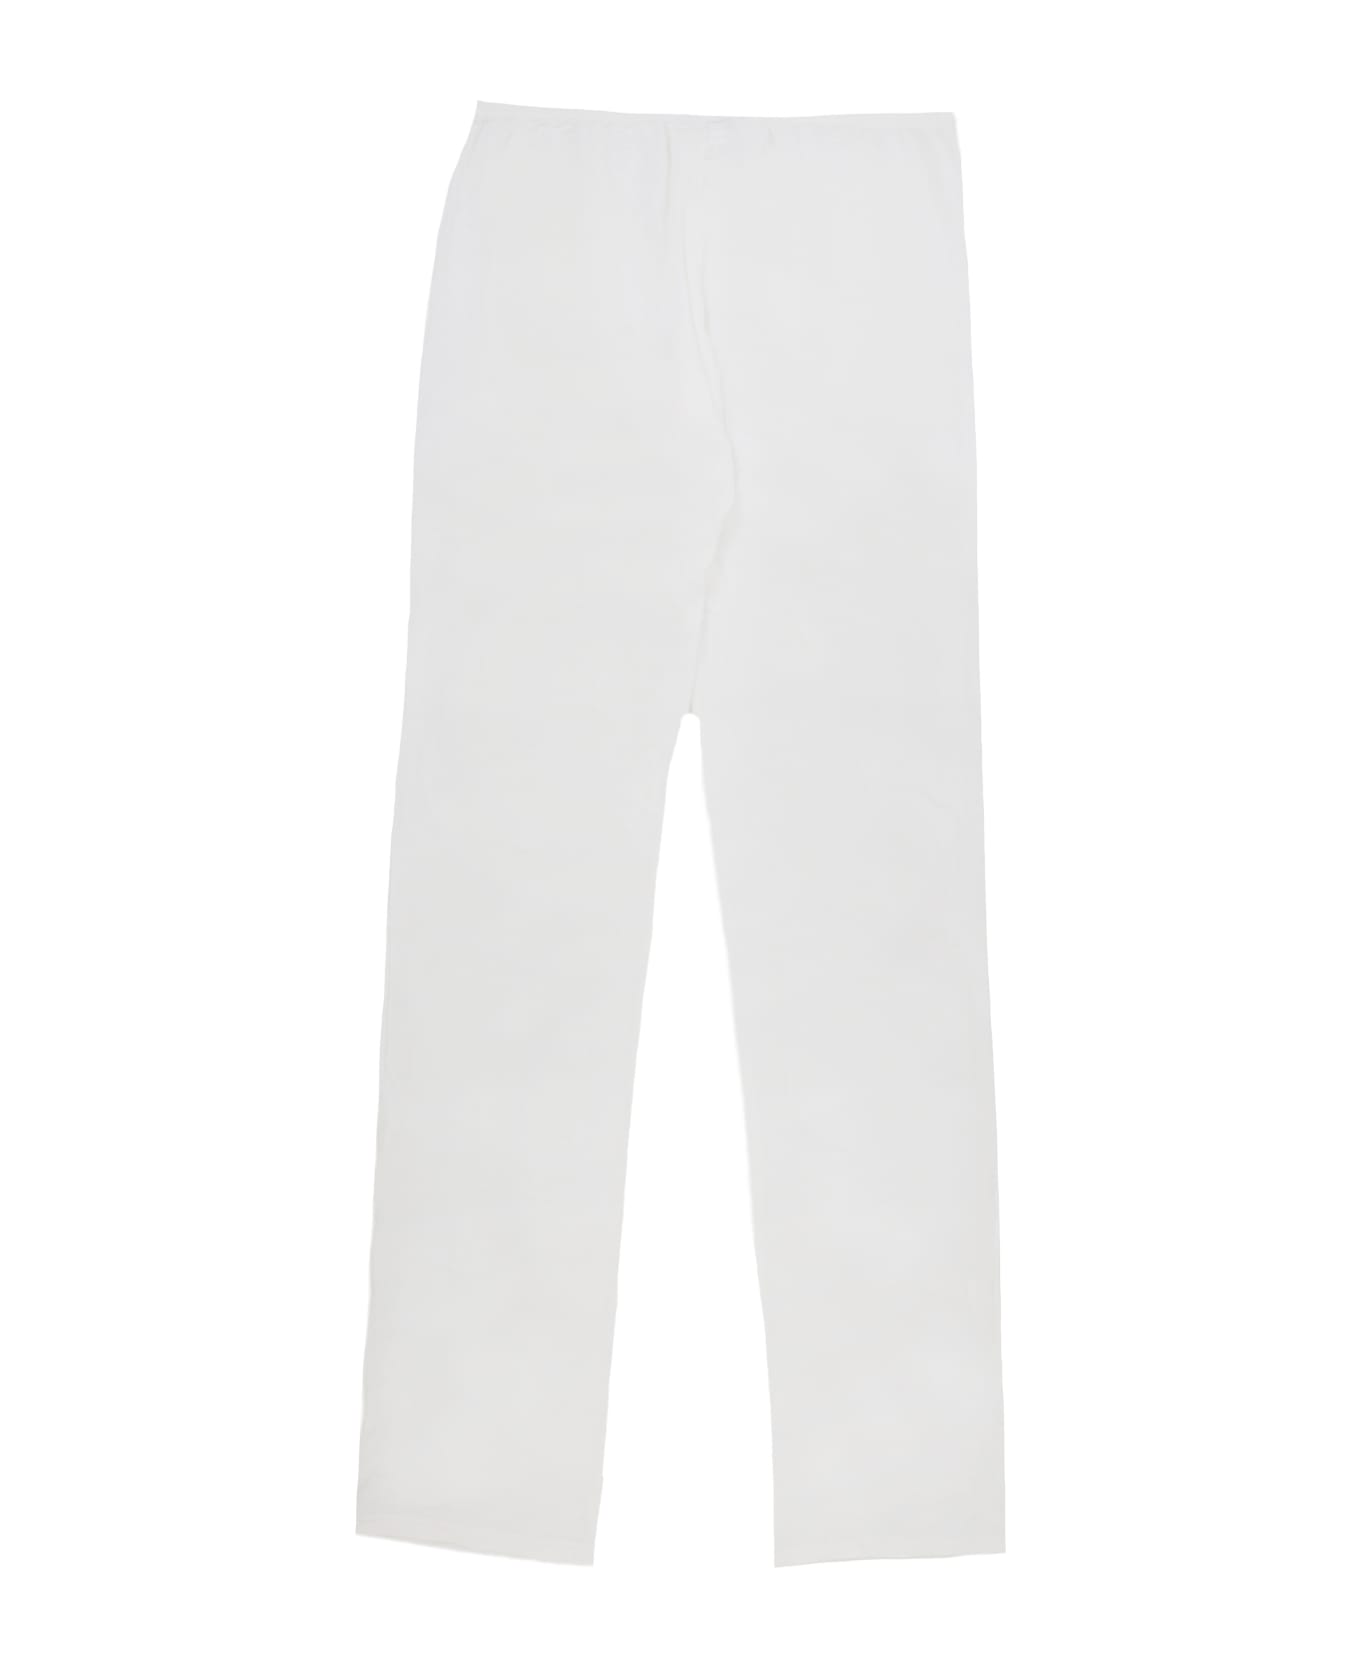 Story Loris Micromodal Pajamas - White